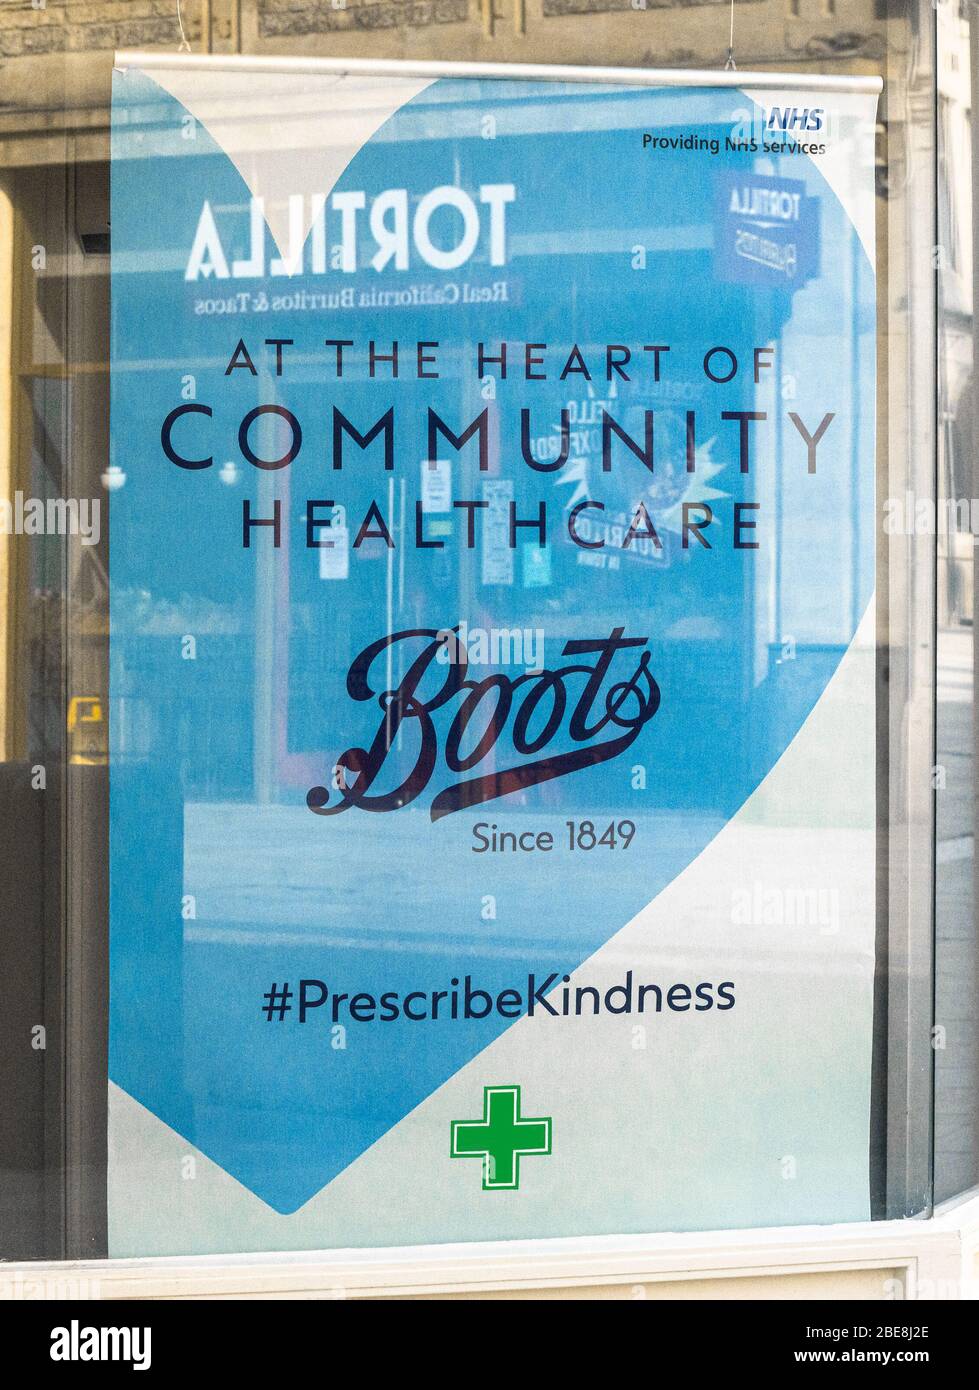 Un mensaje de ánimo mostrado en una ventana de la tienda de Boots the Chemist. "Prescribir bondad" Reino Unido Foto de stock